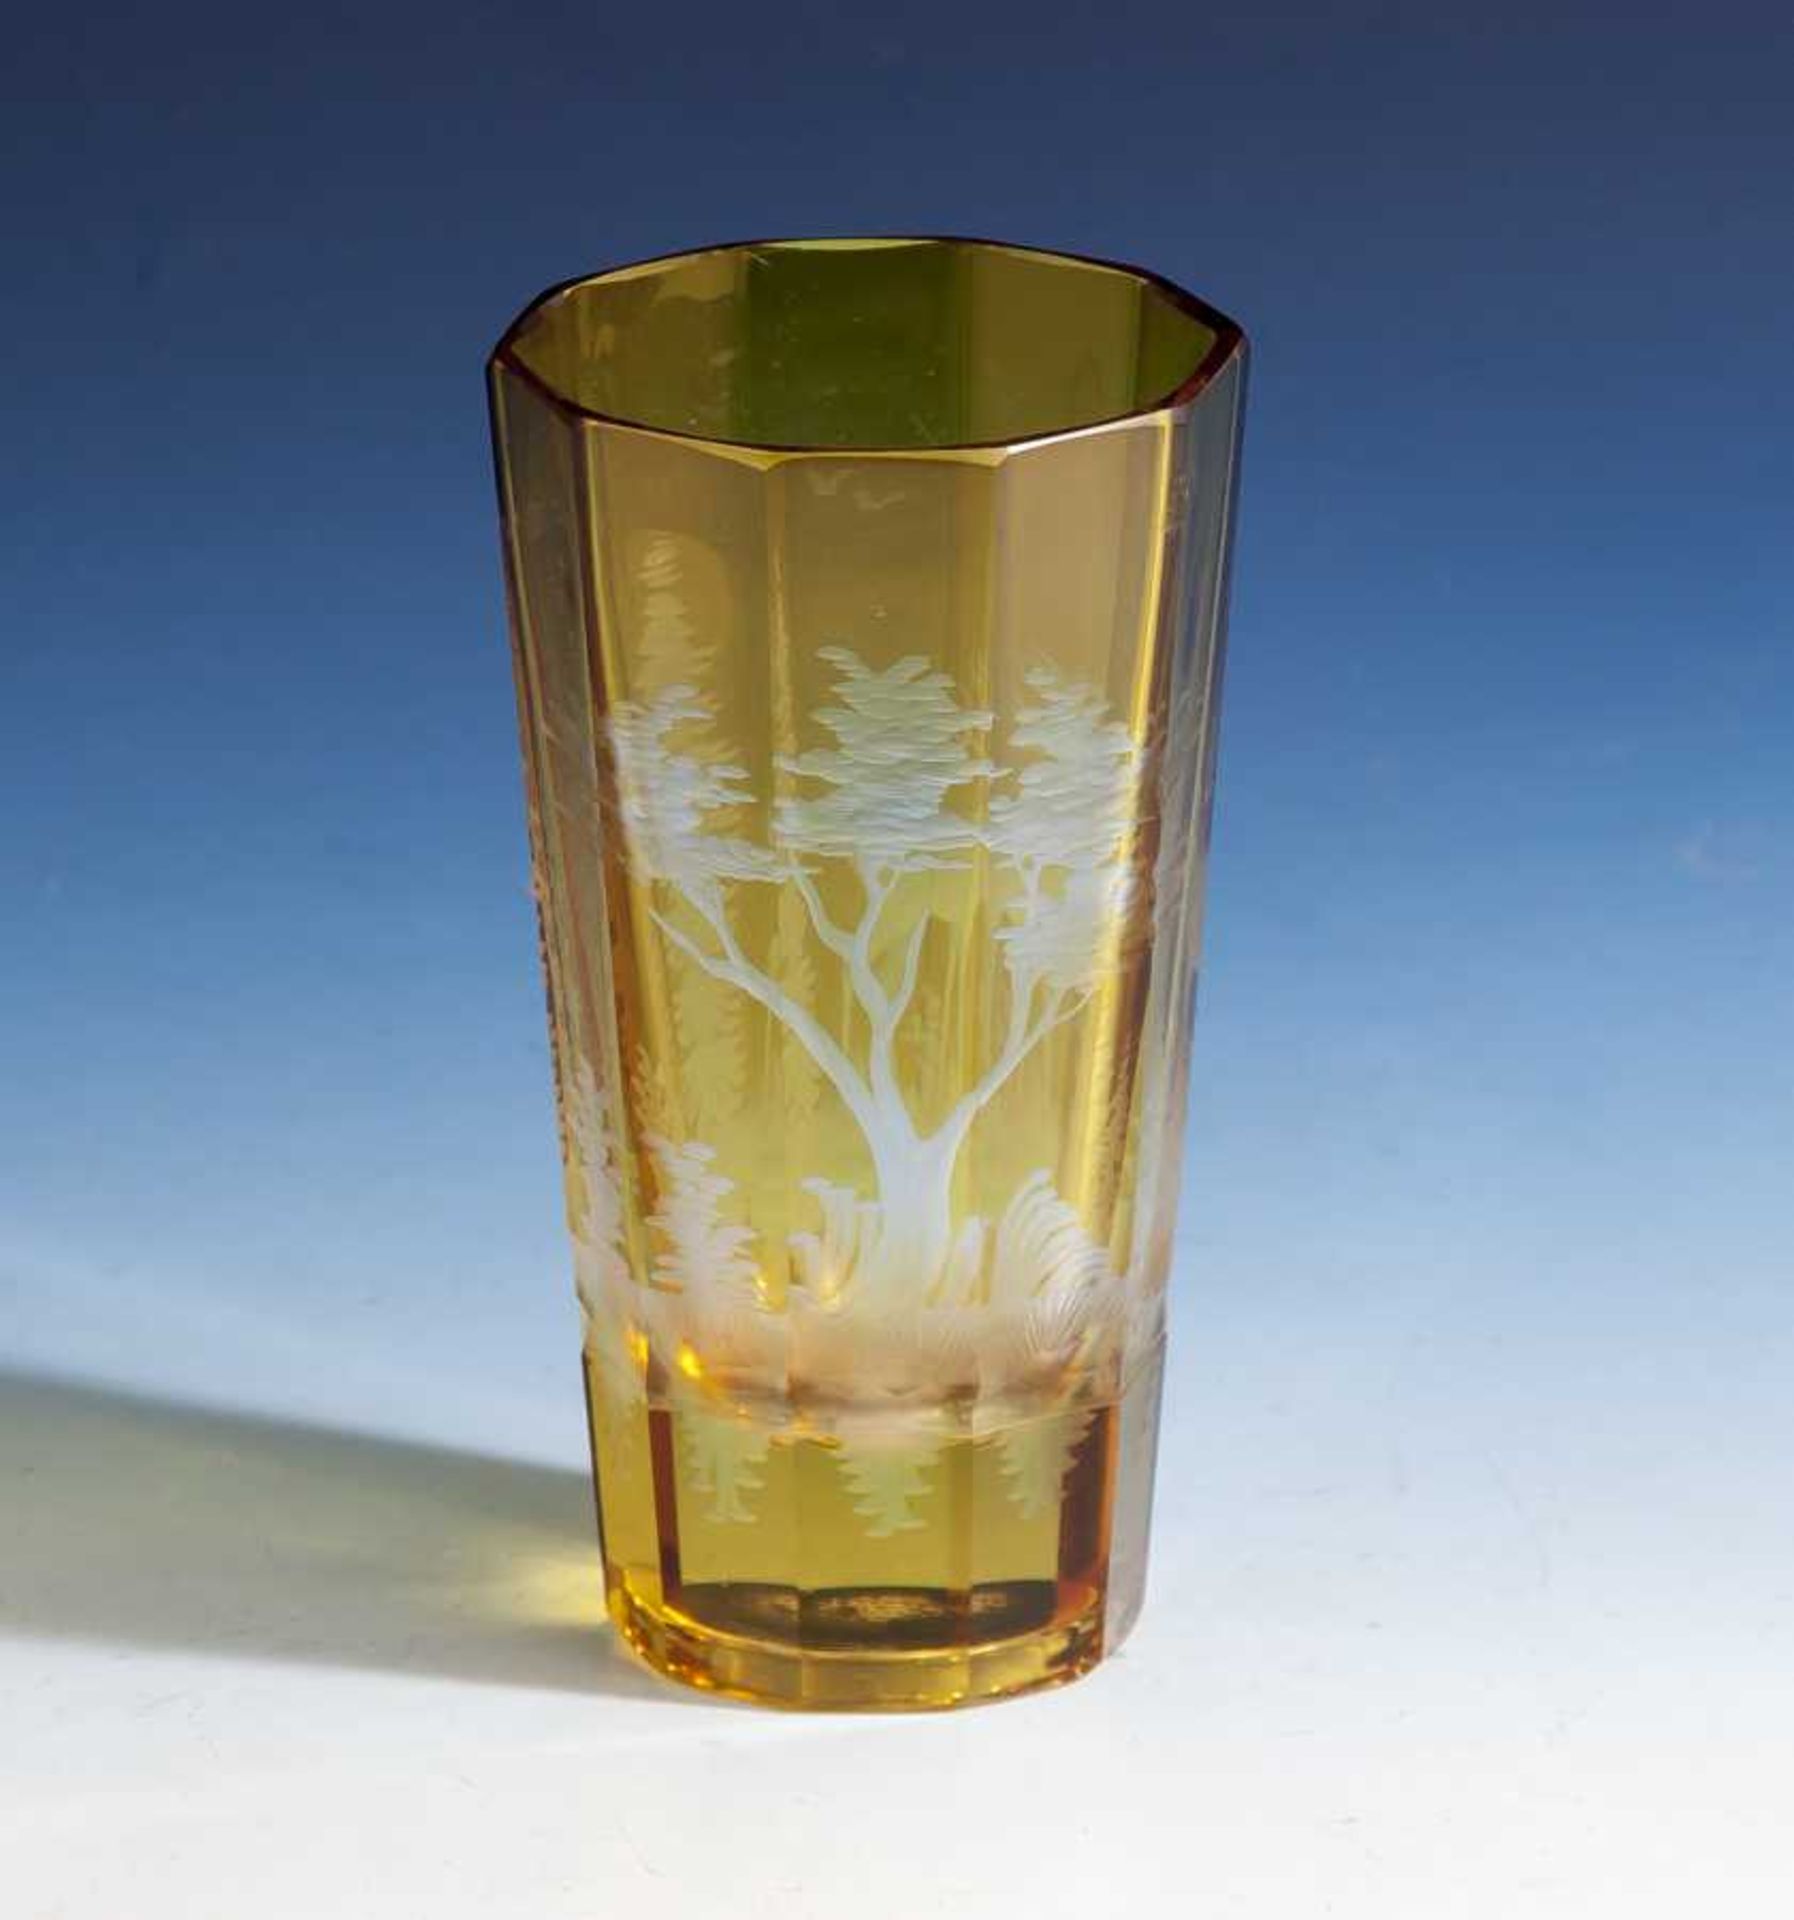 Jagdliches Glas, 19. Jahrhundert, 10-fach facettiert, nach oben auslaufend, farblosesGlas,